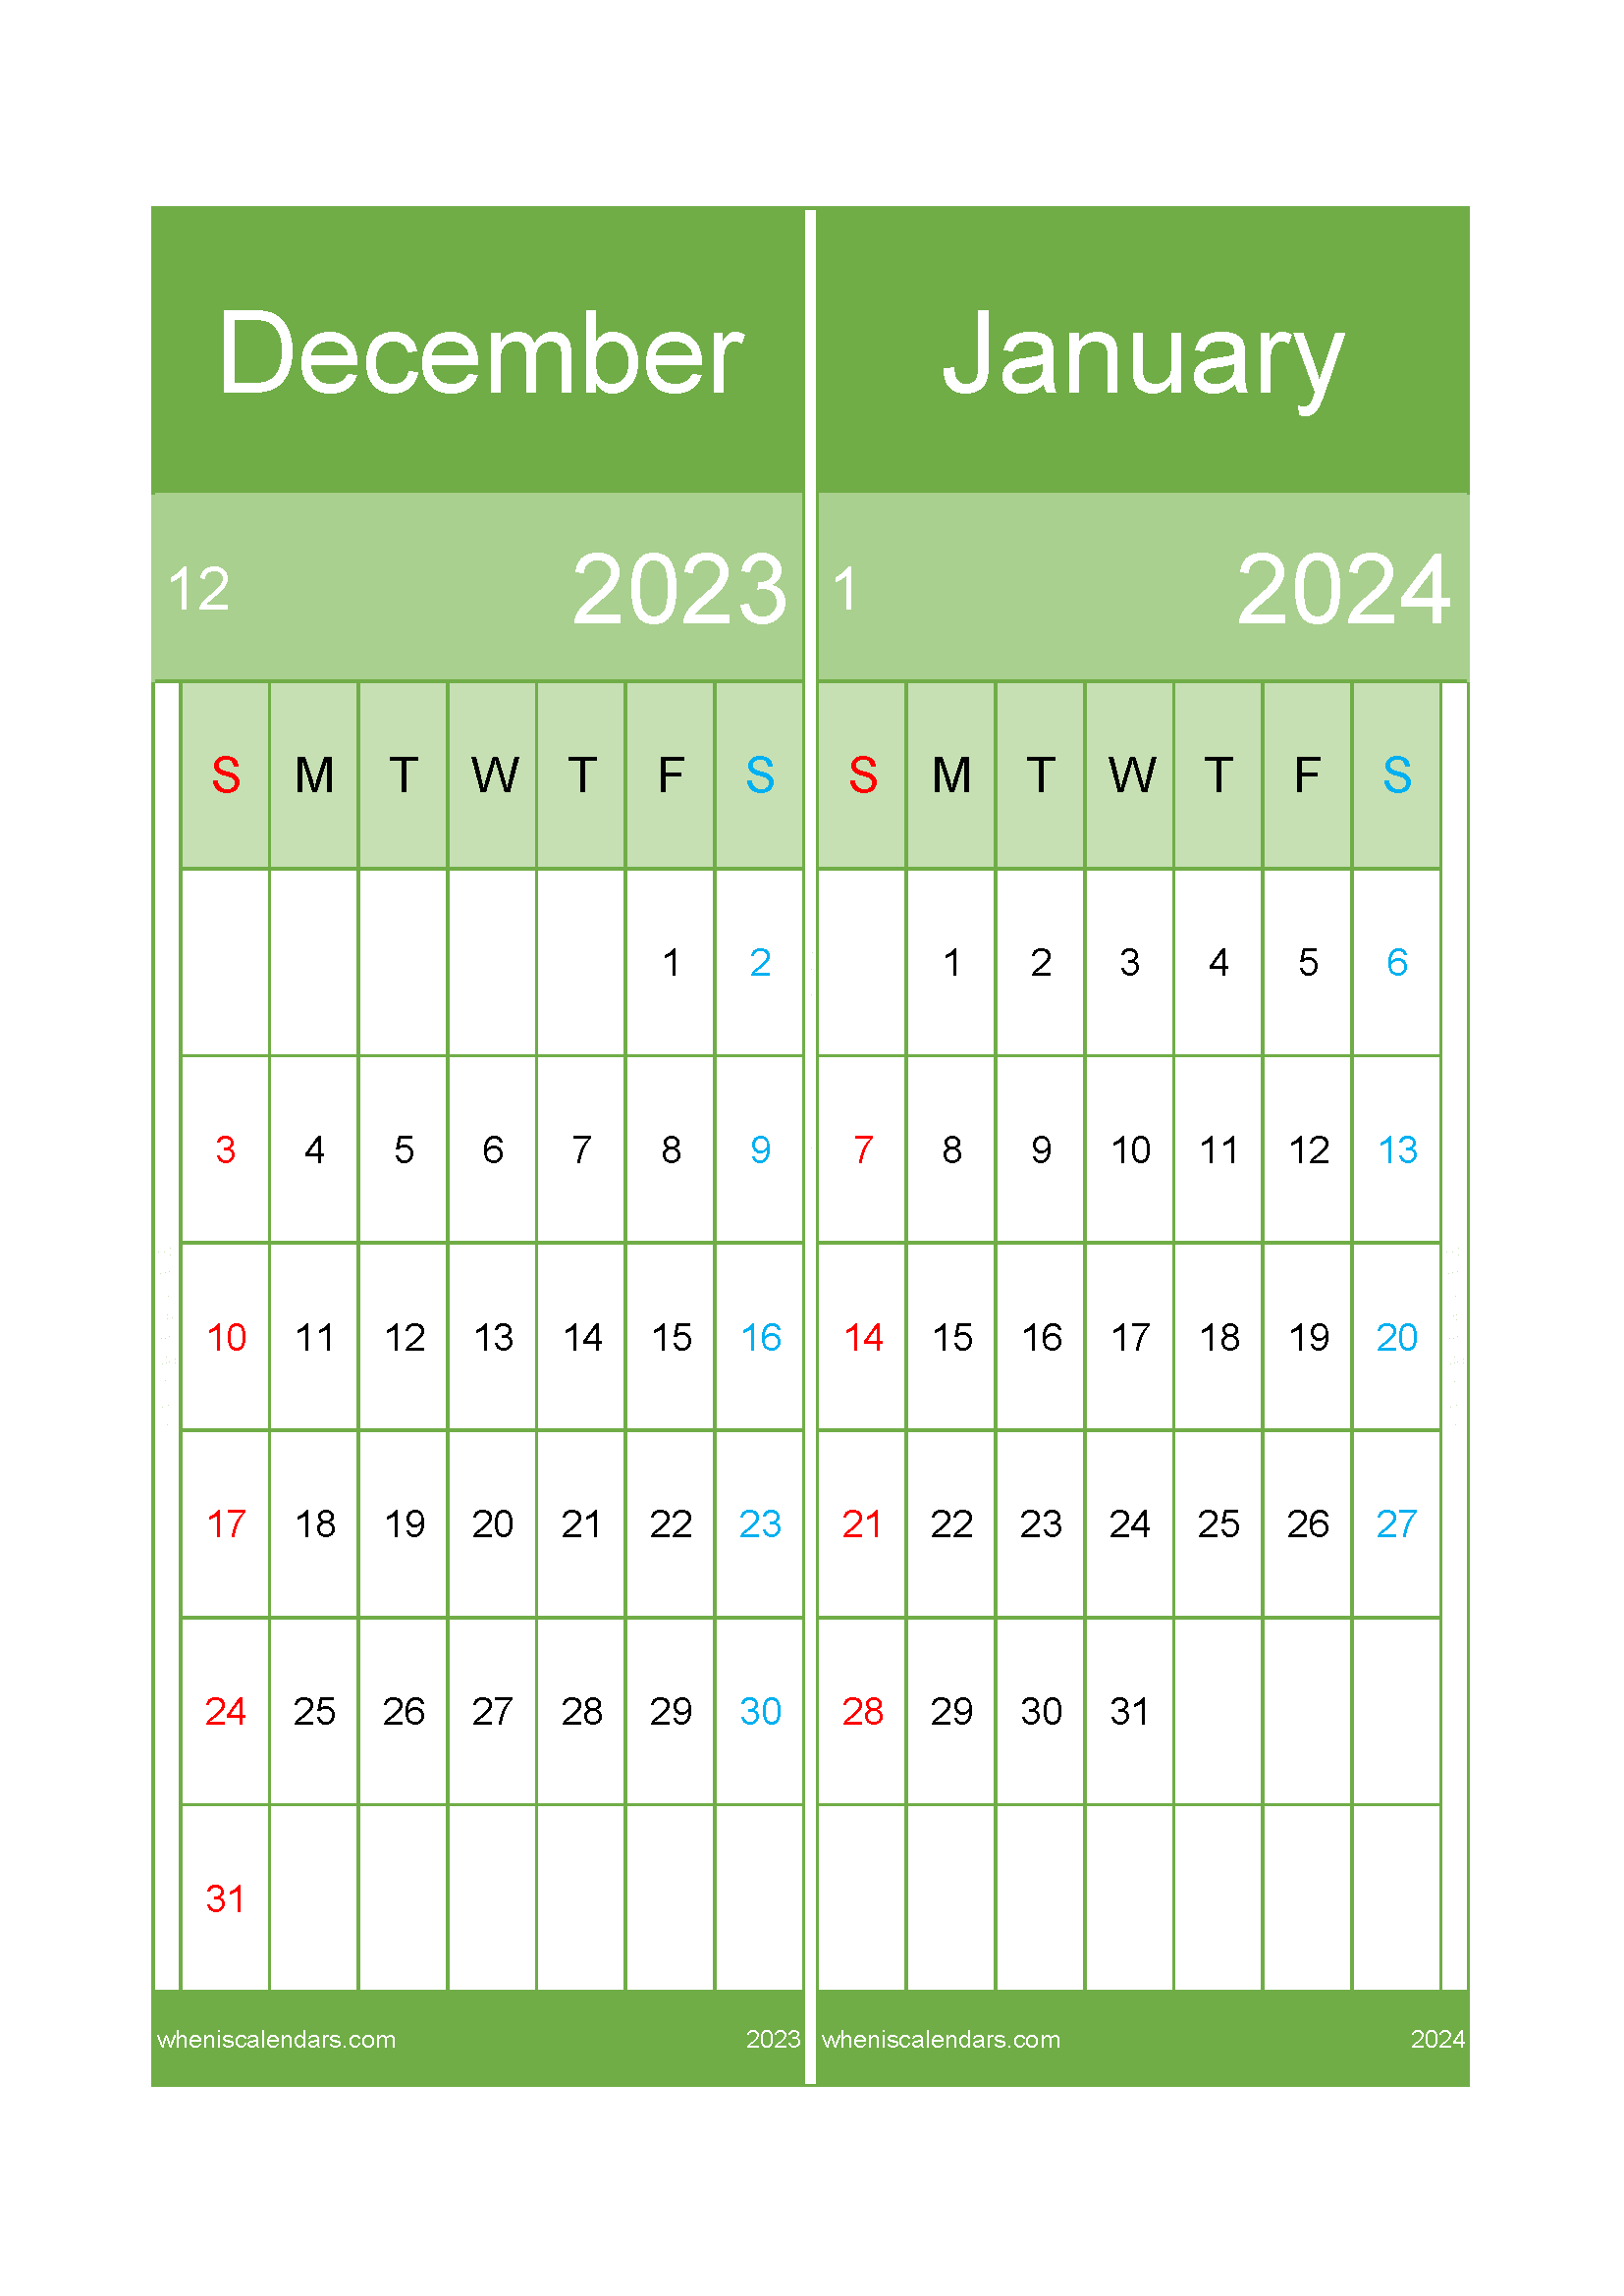 Dec 2023 and January 2024 calendar DJ232026